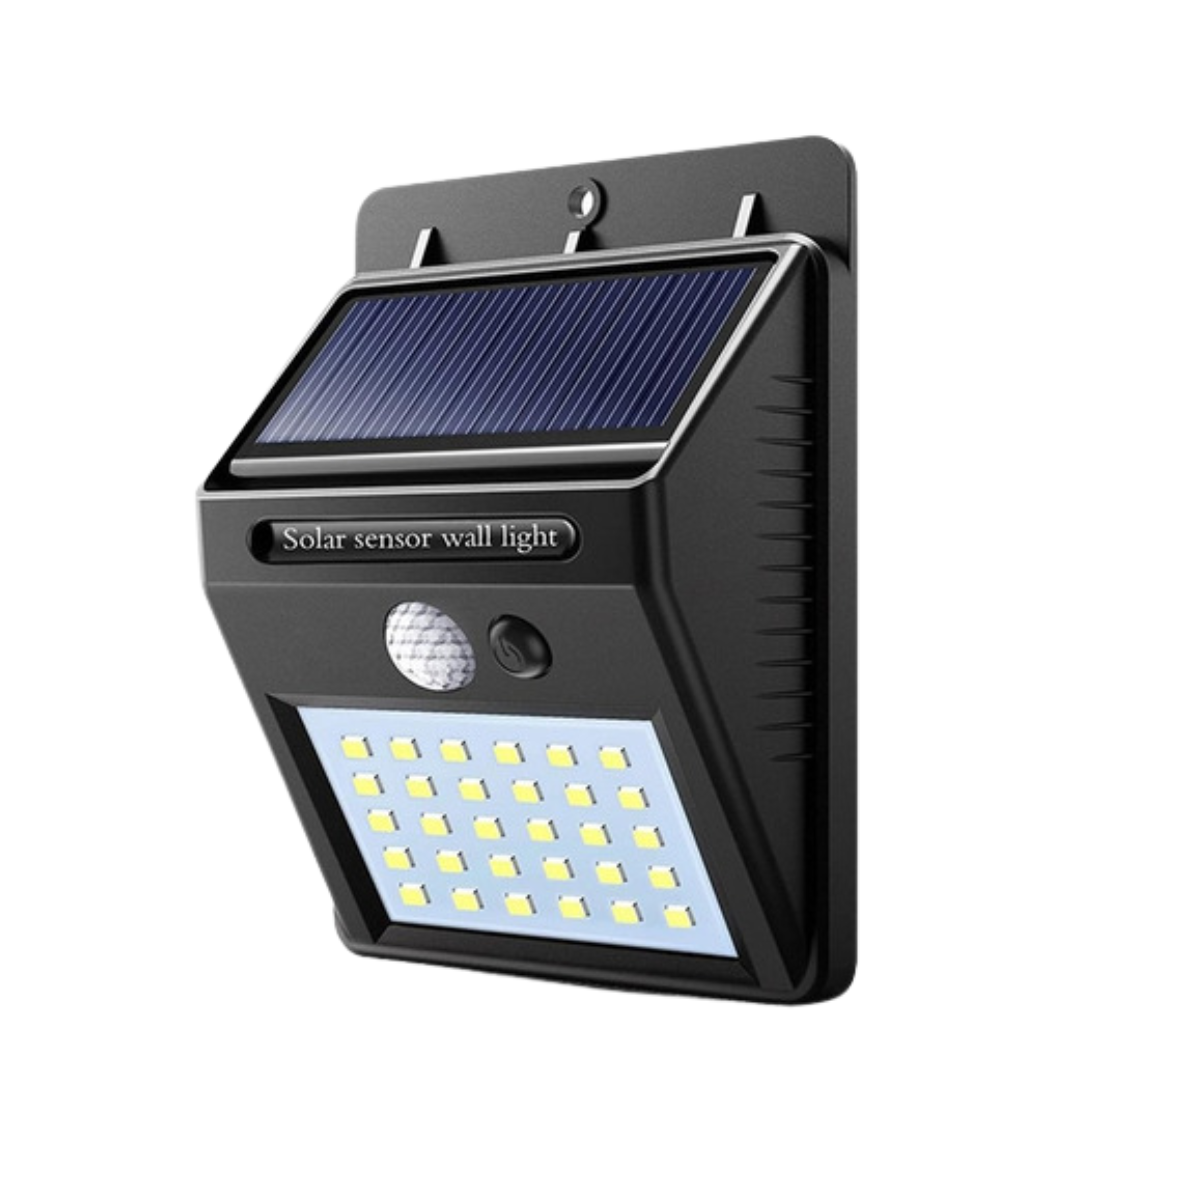 Kit 2 Luminárias Led Arandela Solar Luz Com Sensor De Presença Movimento Para Paredes Muros Quintais - 5